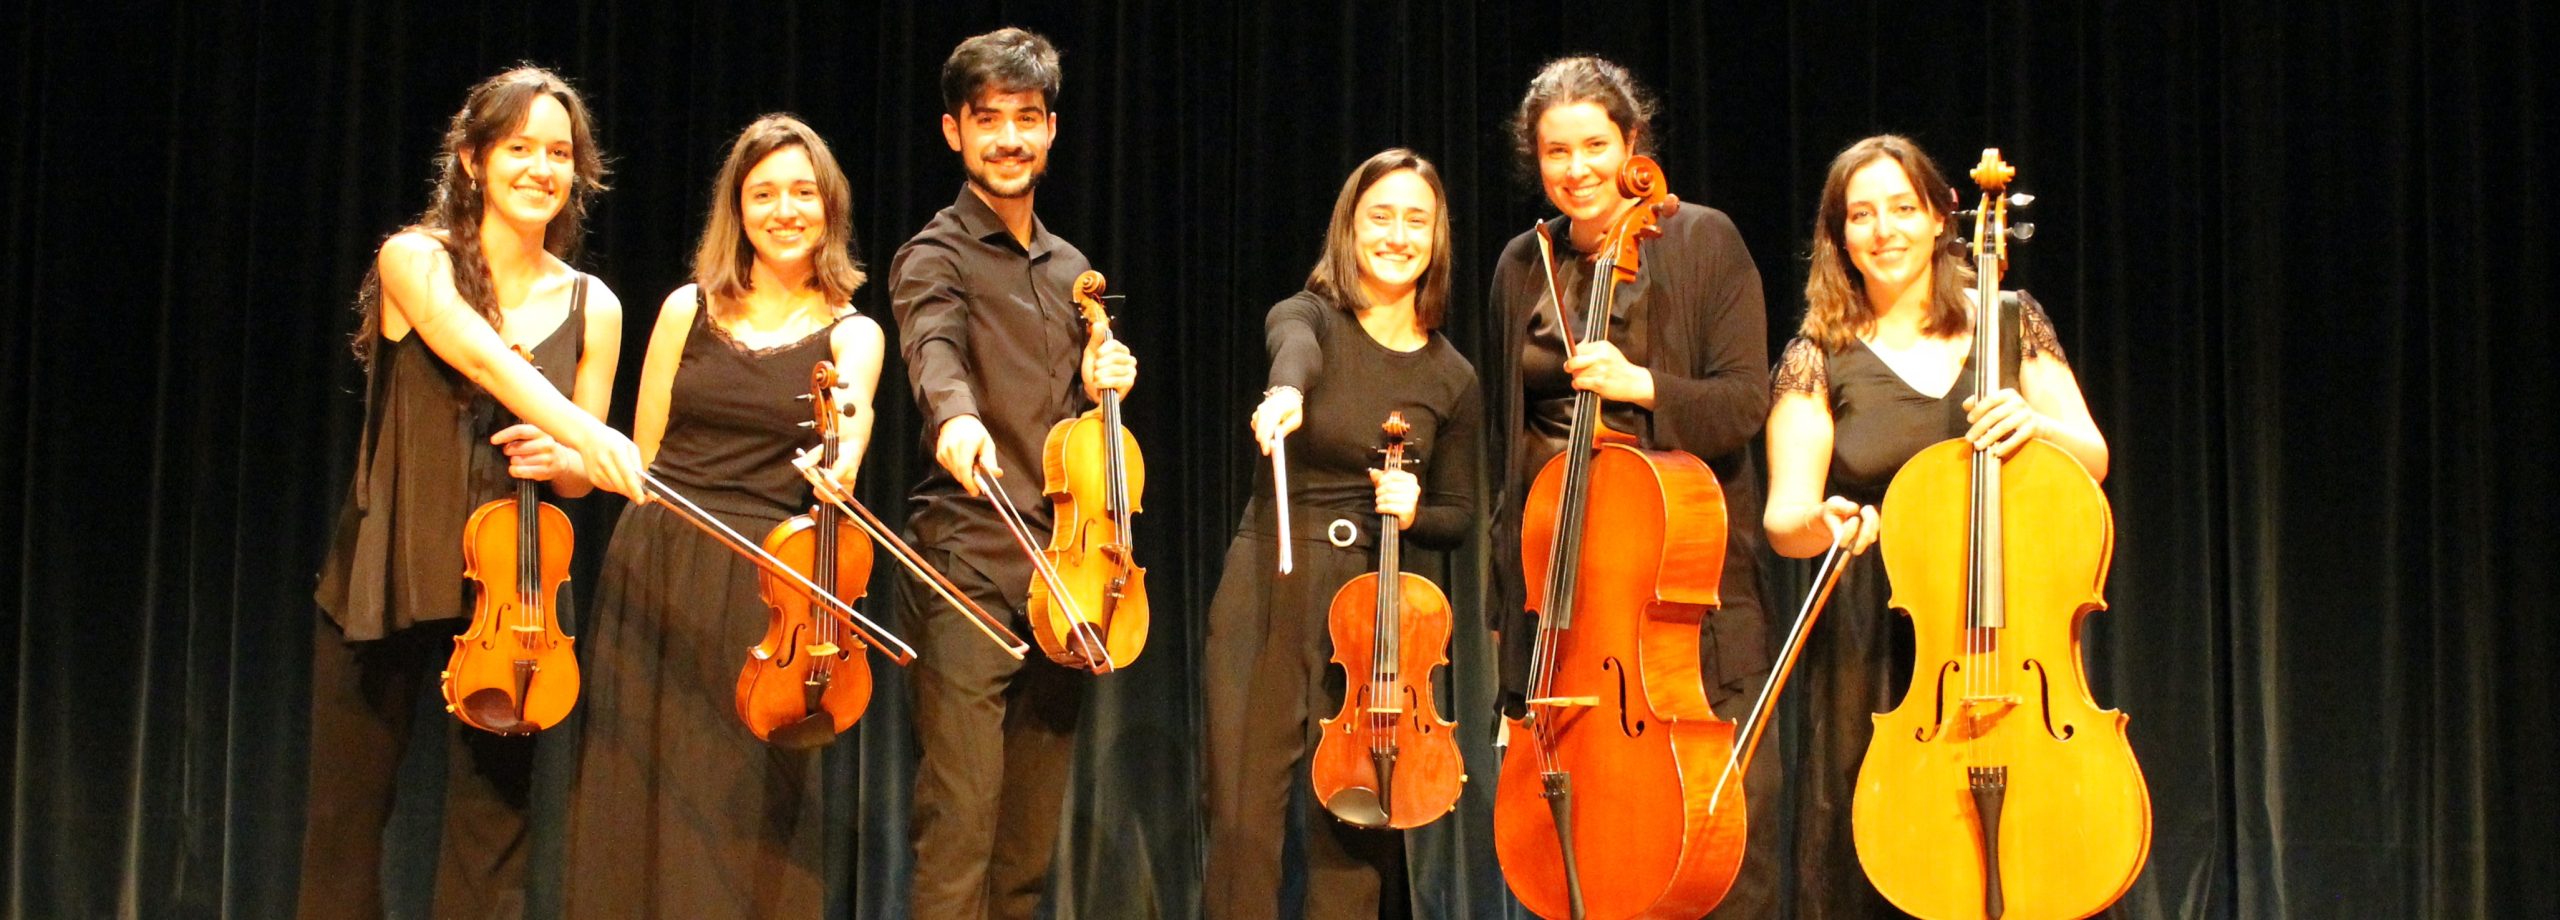 Sinfonía de Bolsillo – Ensemble Rioja Filarmonía